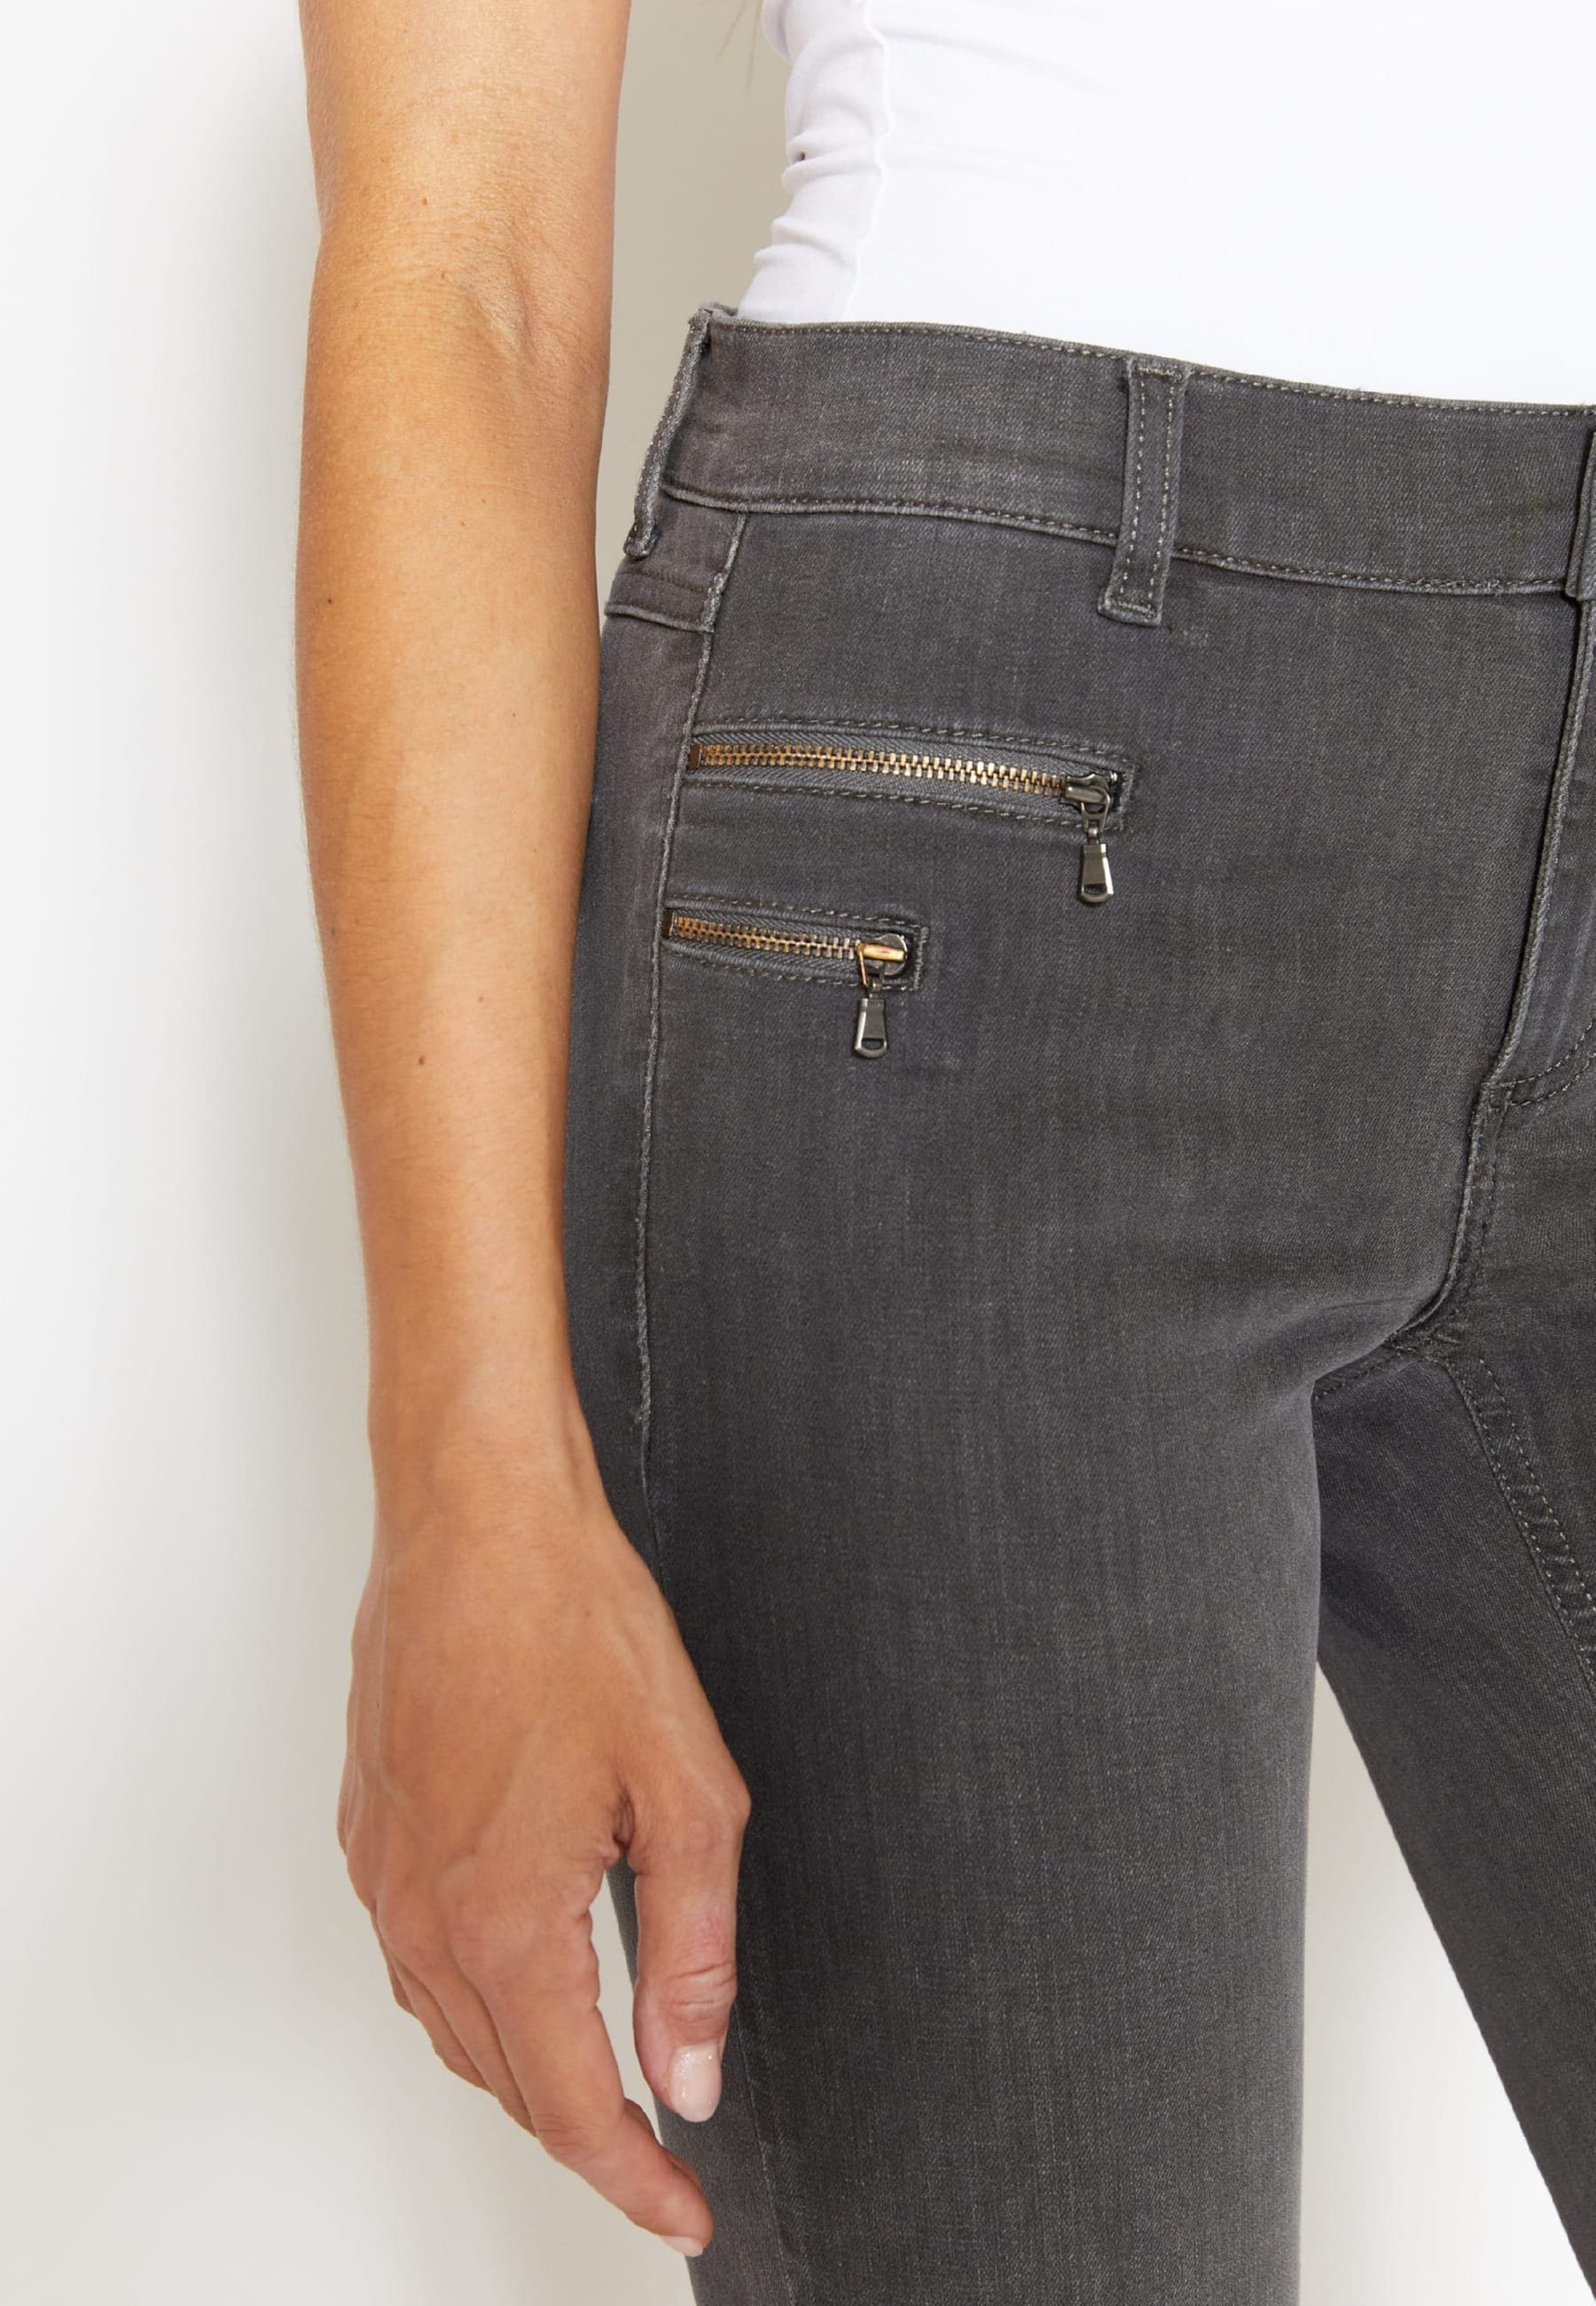 Jeans Zip Zierreißverschlüssen ANGELS grau Slim-fit-Jeans mit Malu mit Label-Applikationen